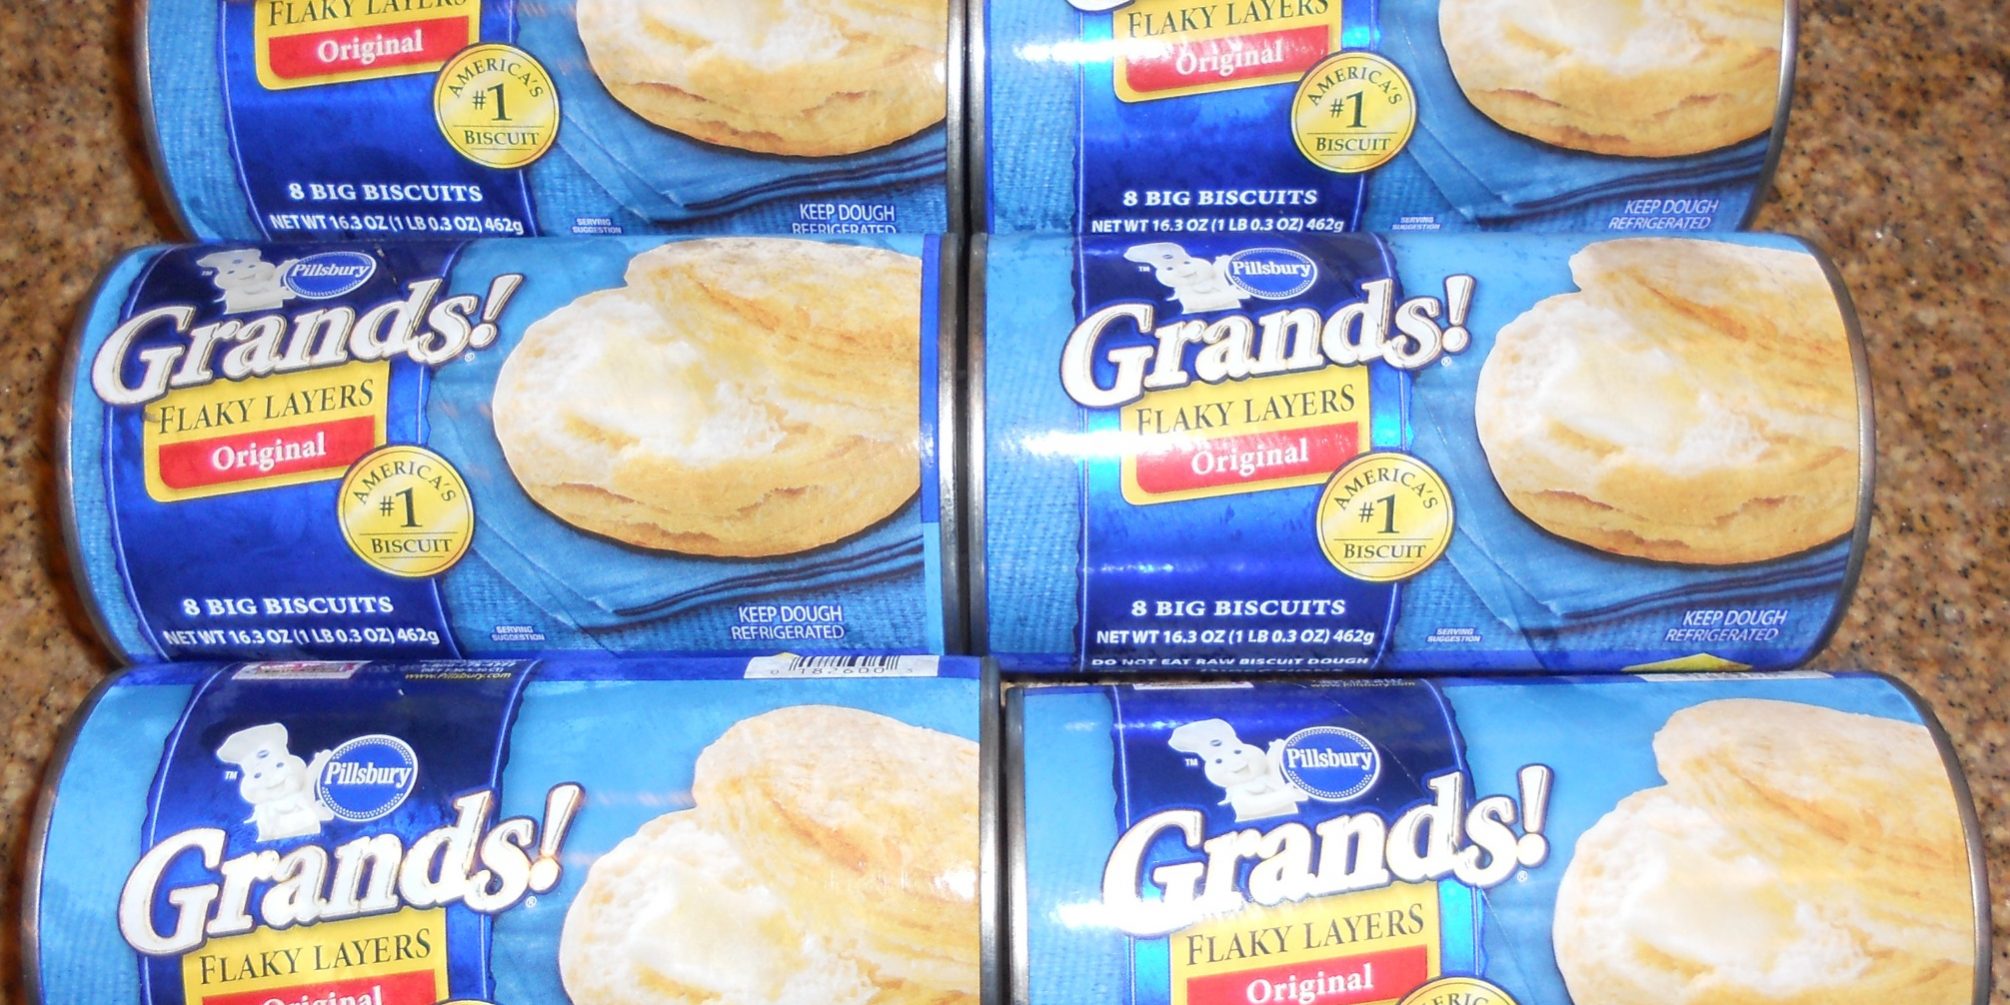 Free Pillsbury Grand biscuits